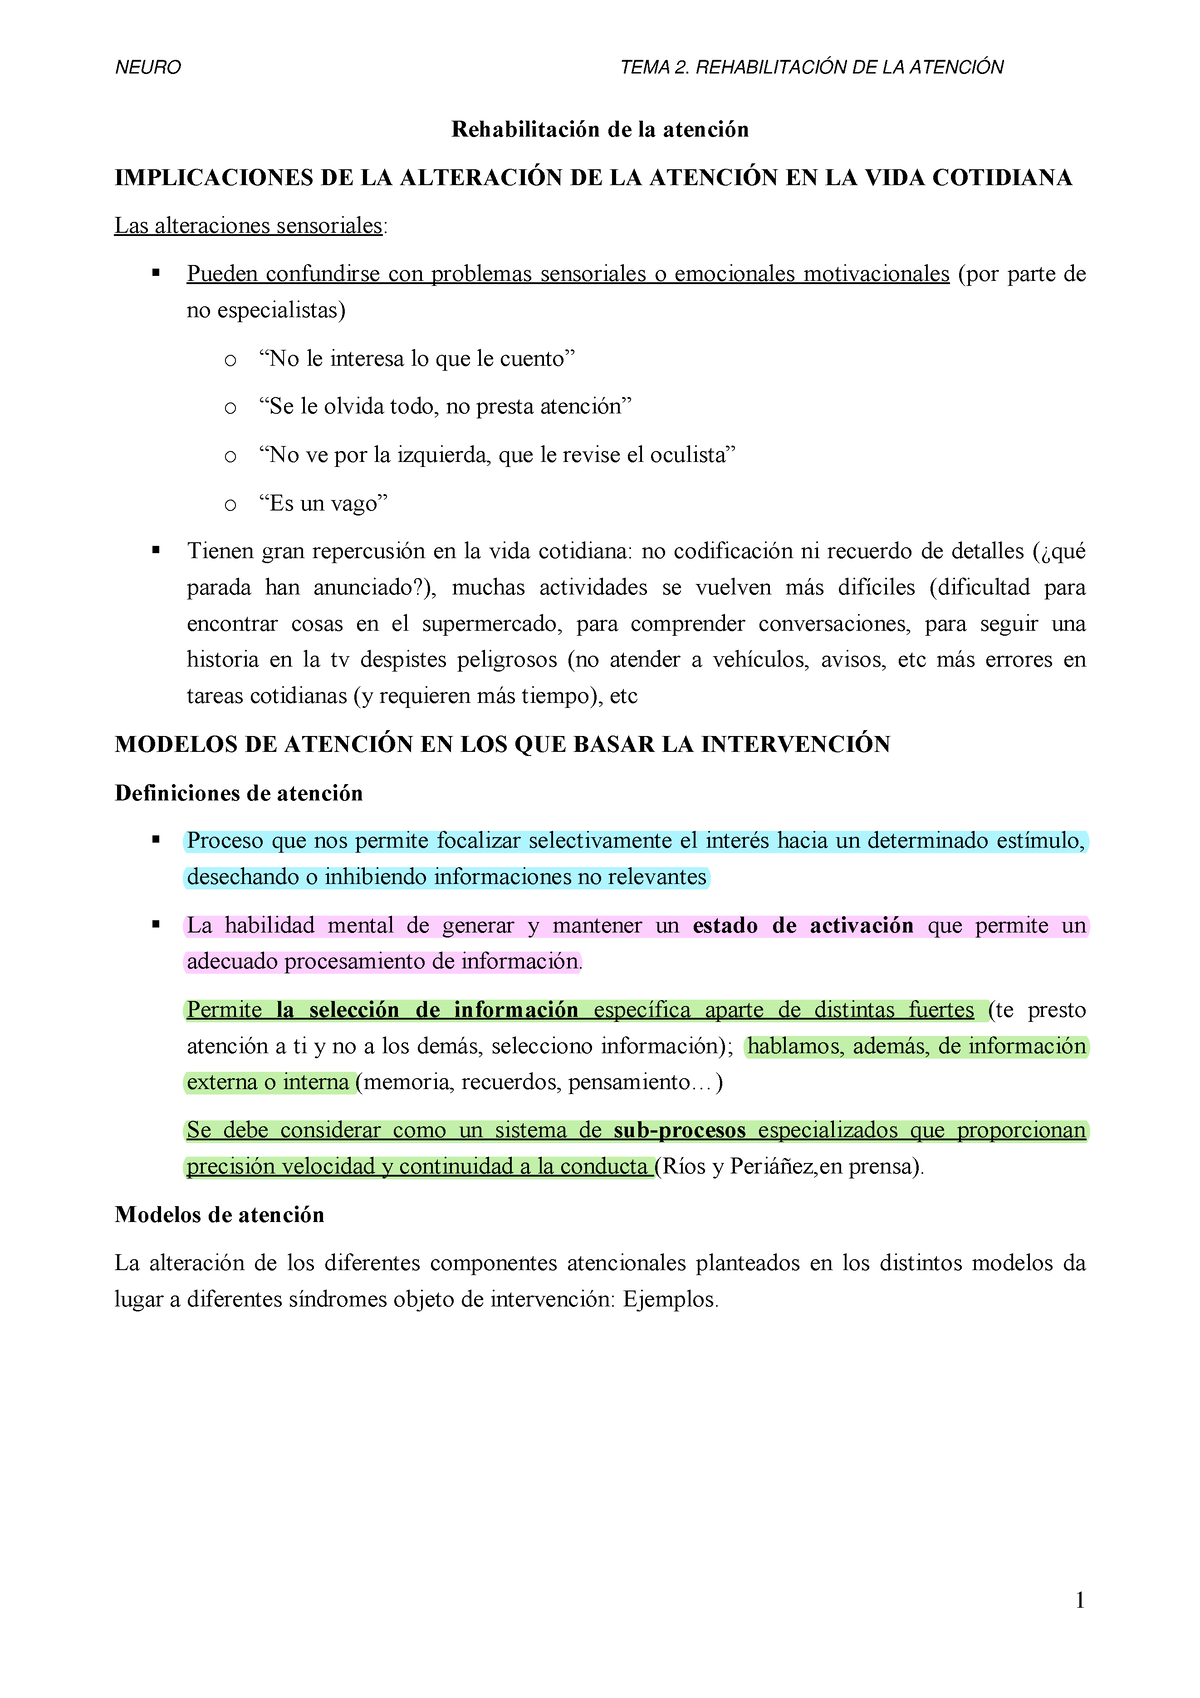 Tema 2 neuro - La atención - Rehabilitación de la atención IMPLICACIONES DE  LA ALTERACIÓN DE LA - Studocu